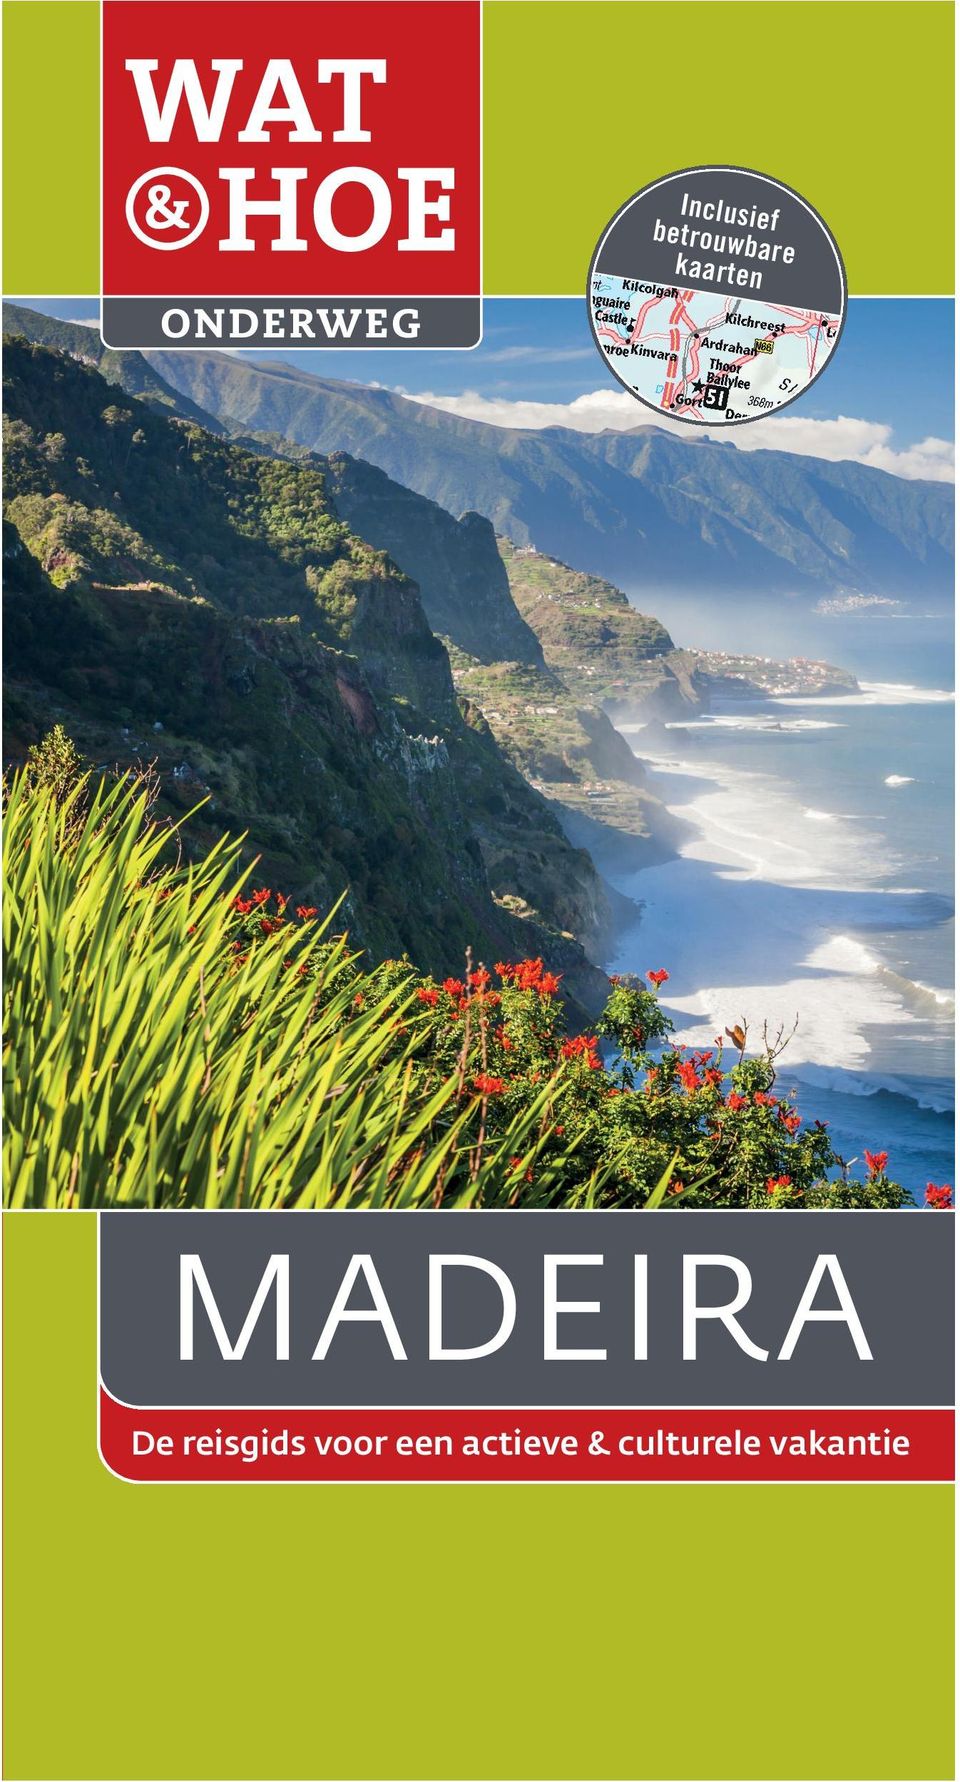 seizoen een aangename vakantie kunt beleven. Het wordt wel het bloemeneiland genoemd, het hele jaar door zijn de tuinen van Madeira een lust voor het oog.